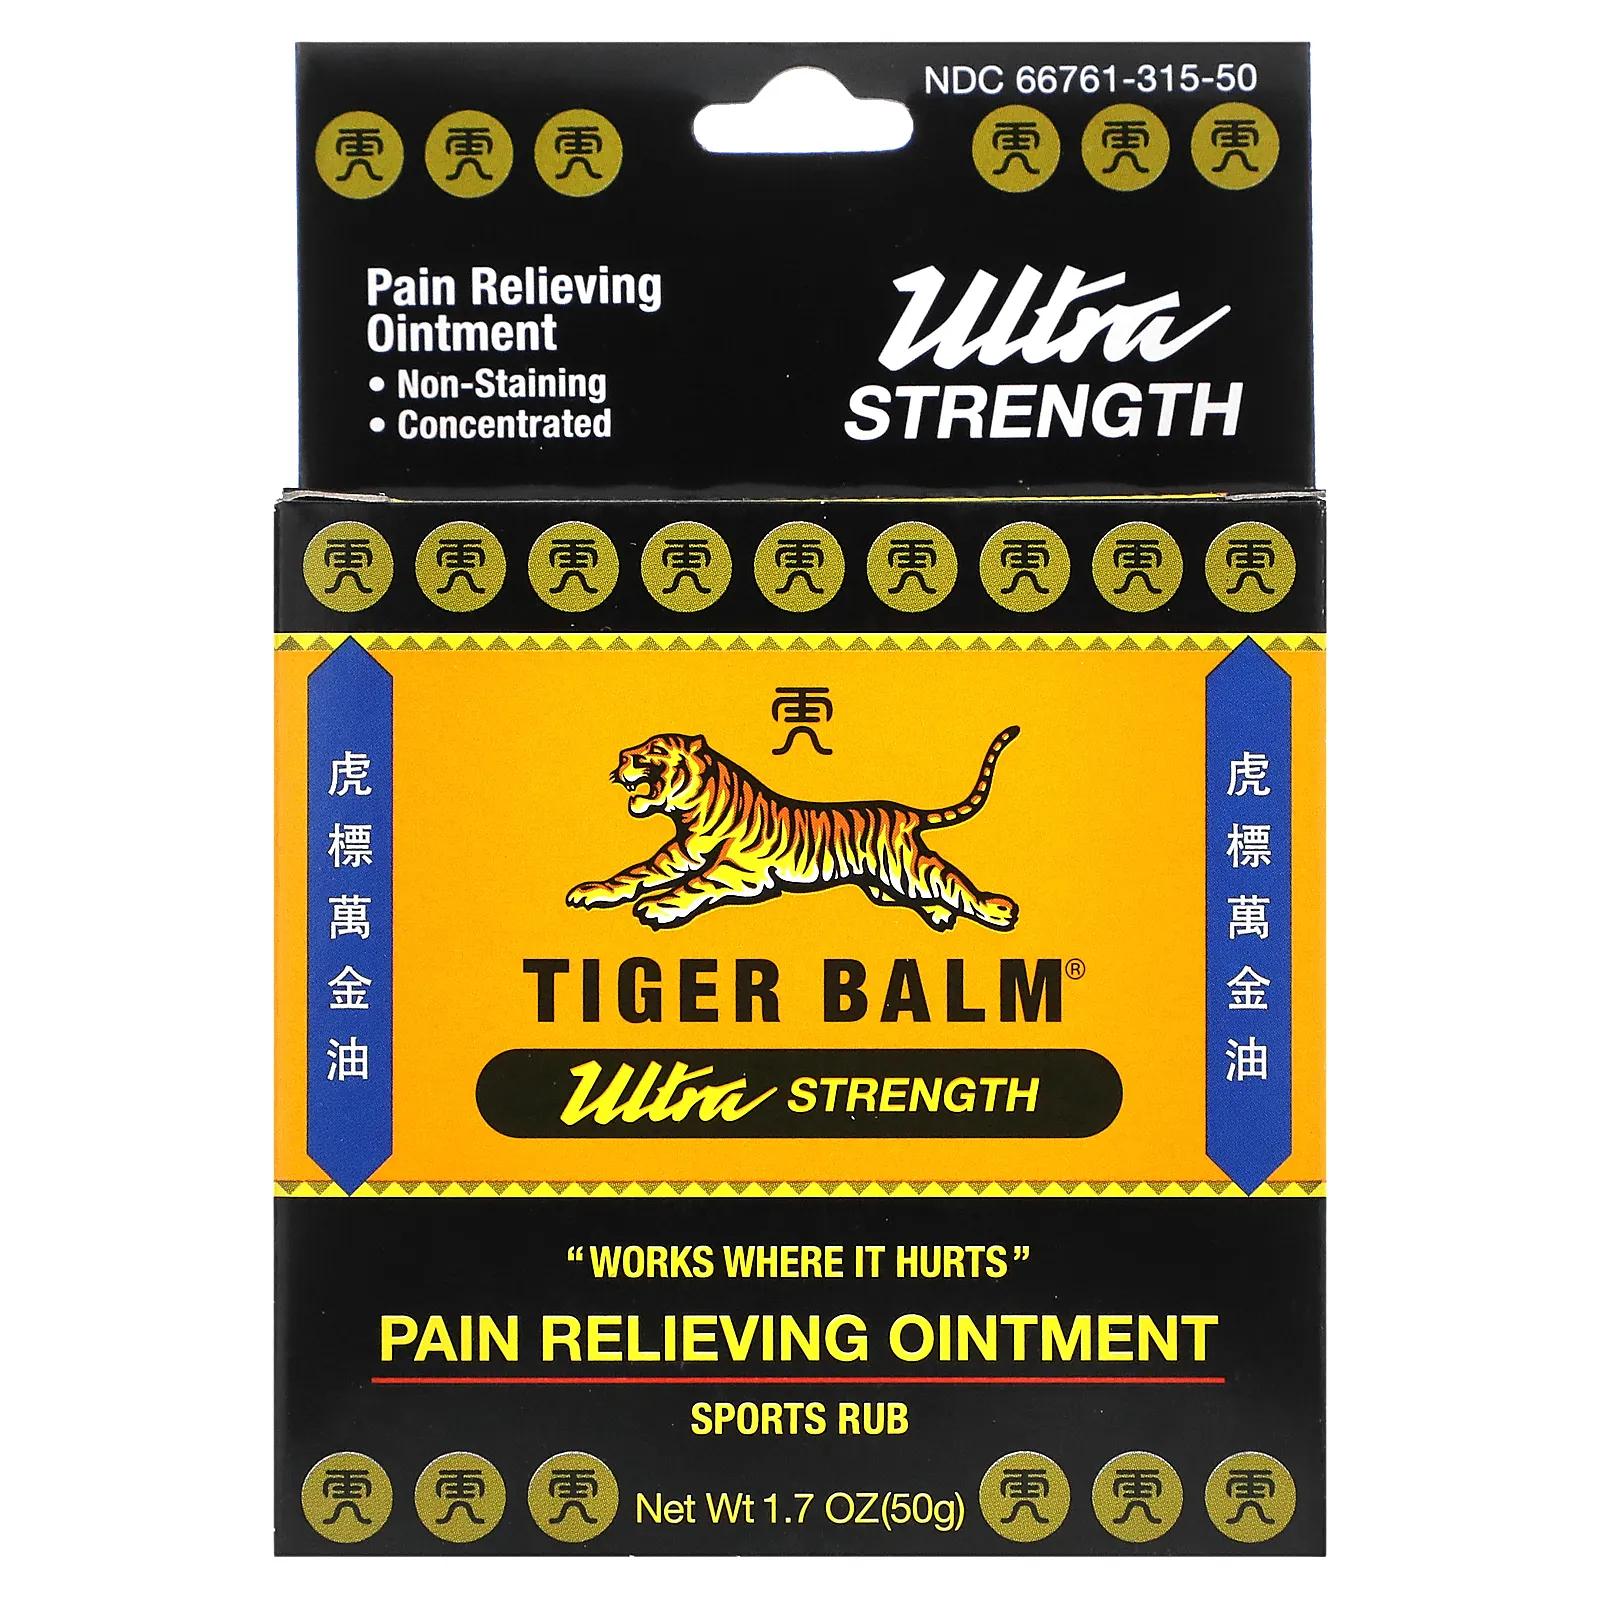 tiger balm red ointment 1 fl oz 30 g Tiger Balm Мазь для снятия боли ультра-сила 1,7 унции (50 г)